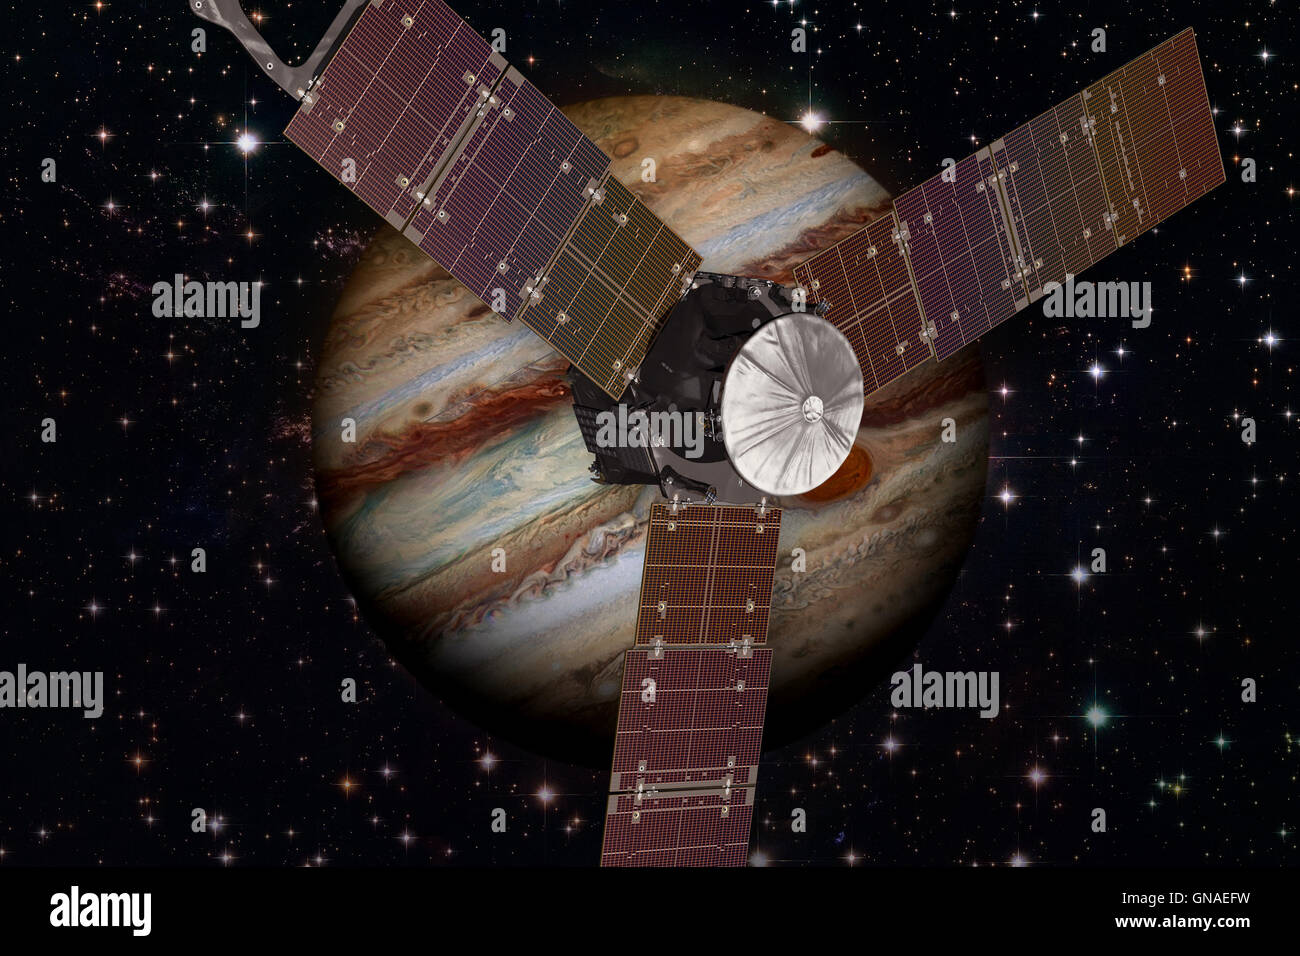 Raumsonde Juno und Jupiter. Elemente des Bildes von der NASA eingerichtet. Stockfoto